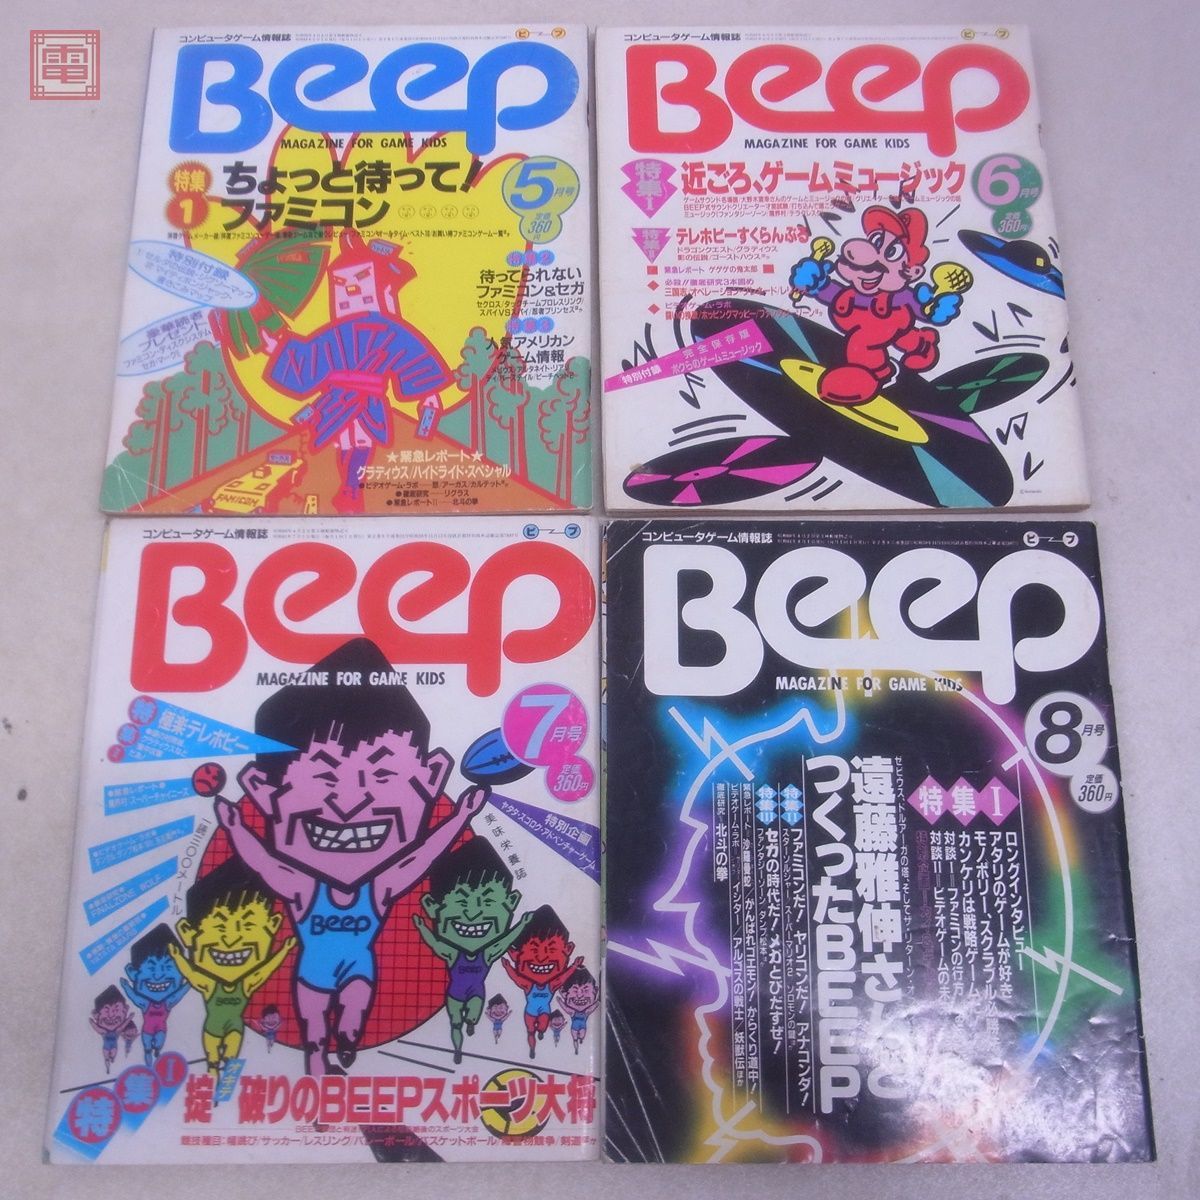  журнал компьютер игра информация журнал ежемесячный Beep 1986 год 1 месяц номер ~12 месяц номер через год .. открытка есть совместно 12 шт. комплект Be p Япония SoftBank [20